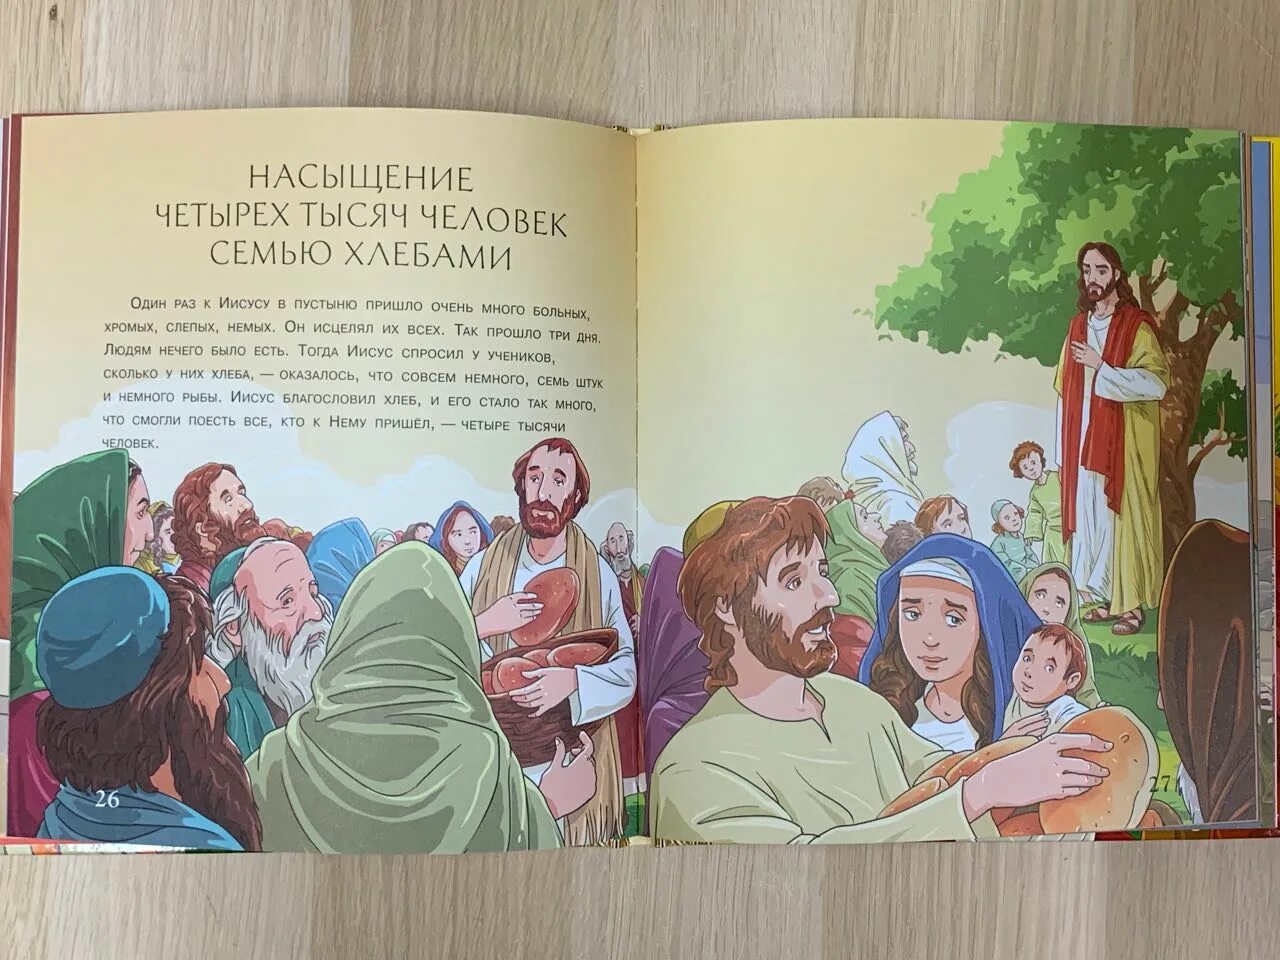 Семи тысячами или семью тысячами. Библия с картинками для самых маленьких. Иллюстрированная Библия для детей с цветными иллюстрациями. Насыщение четырех тысяч семью хлебами. Иллюстрированная Библия для детей мазали.